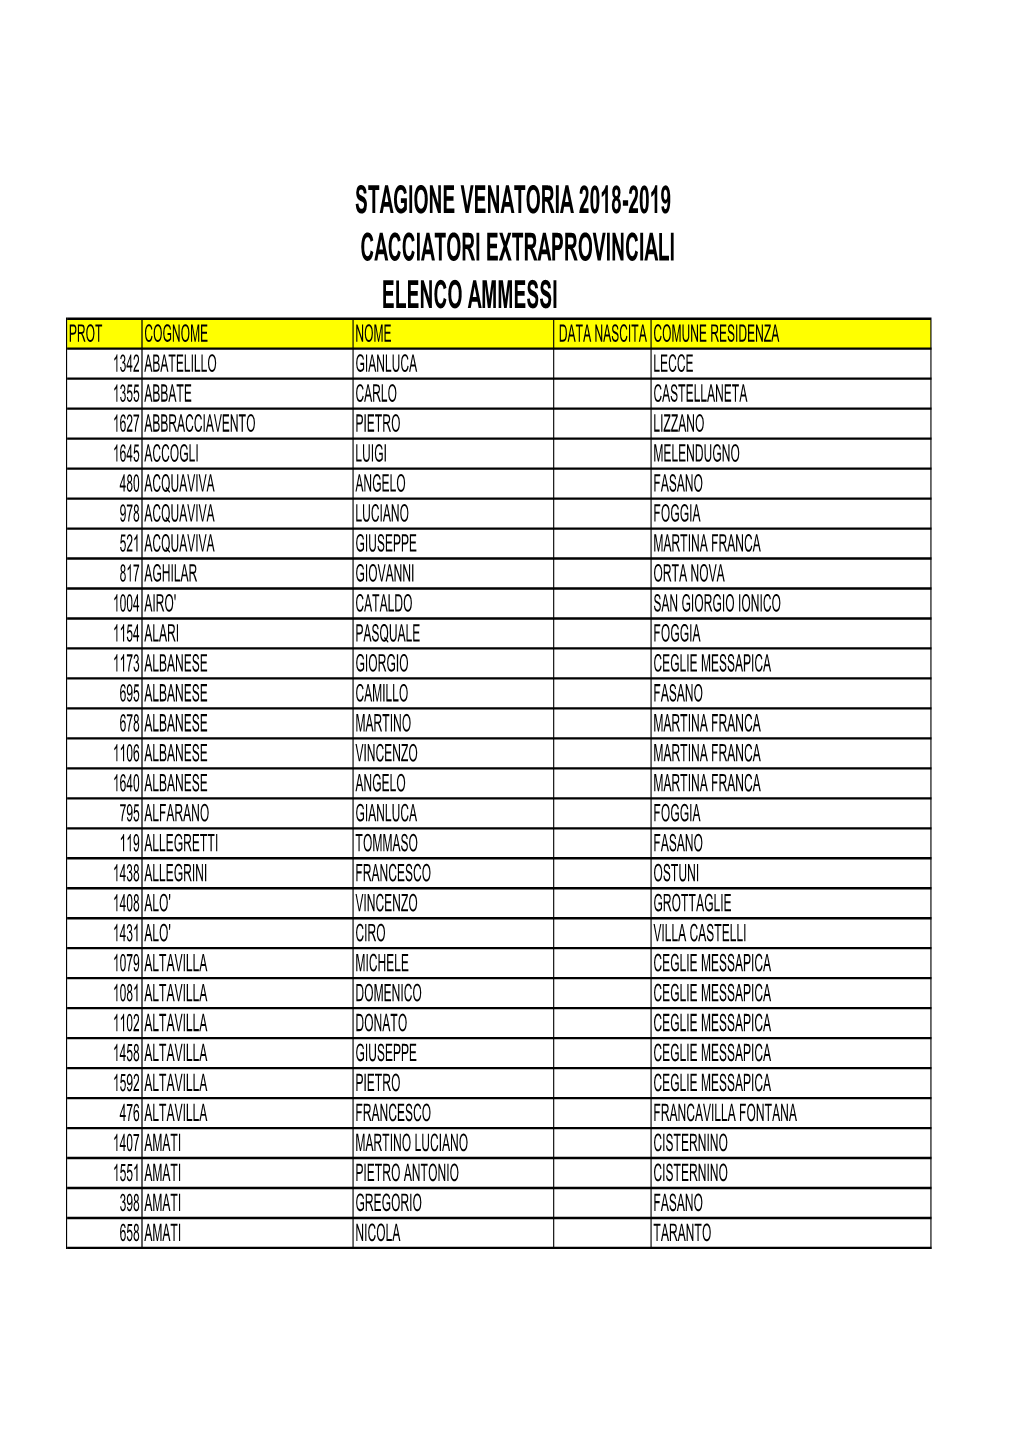 Caciatori Extraprovinciali 2018-19